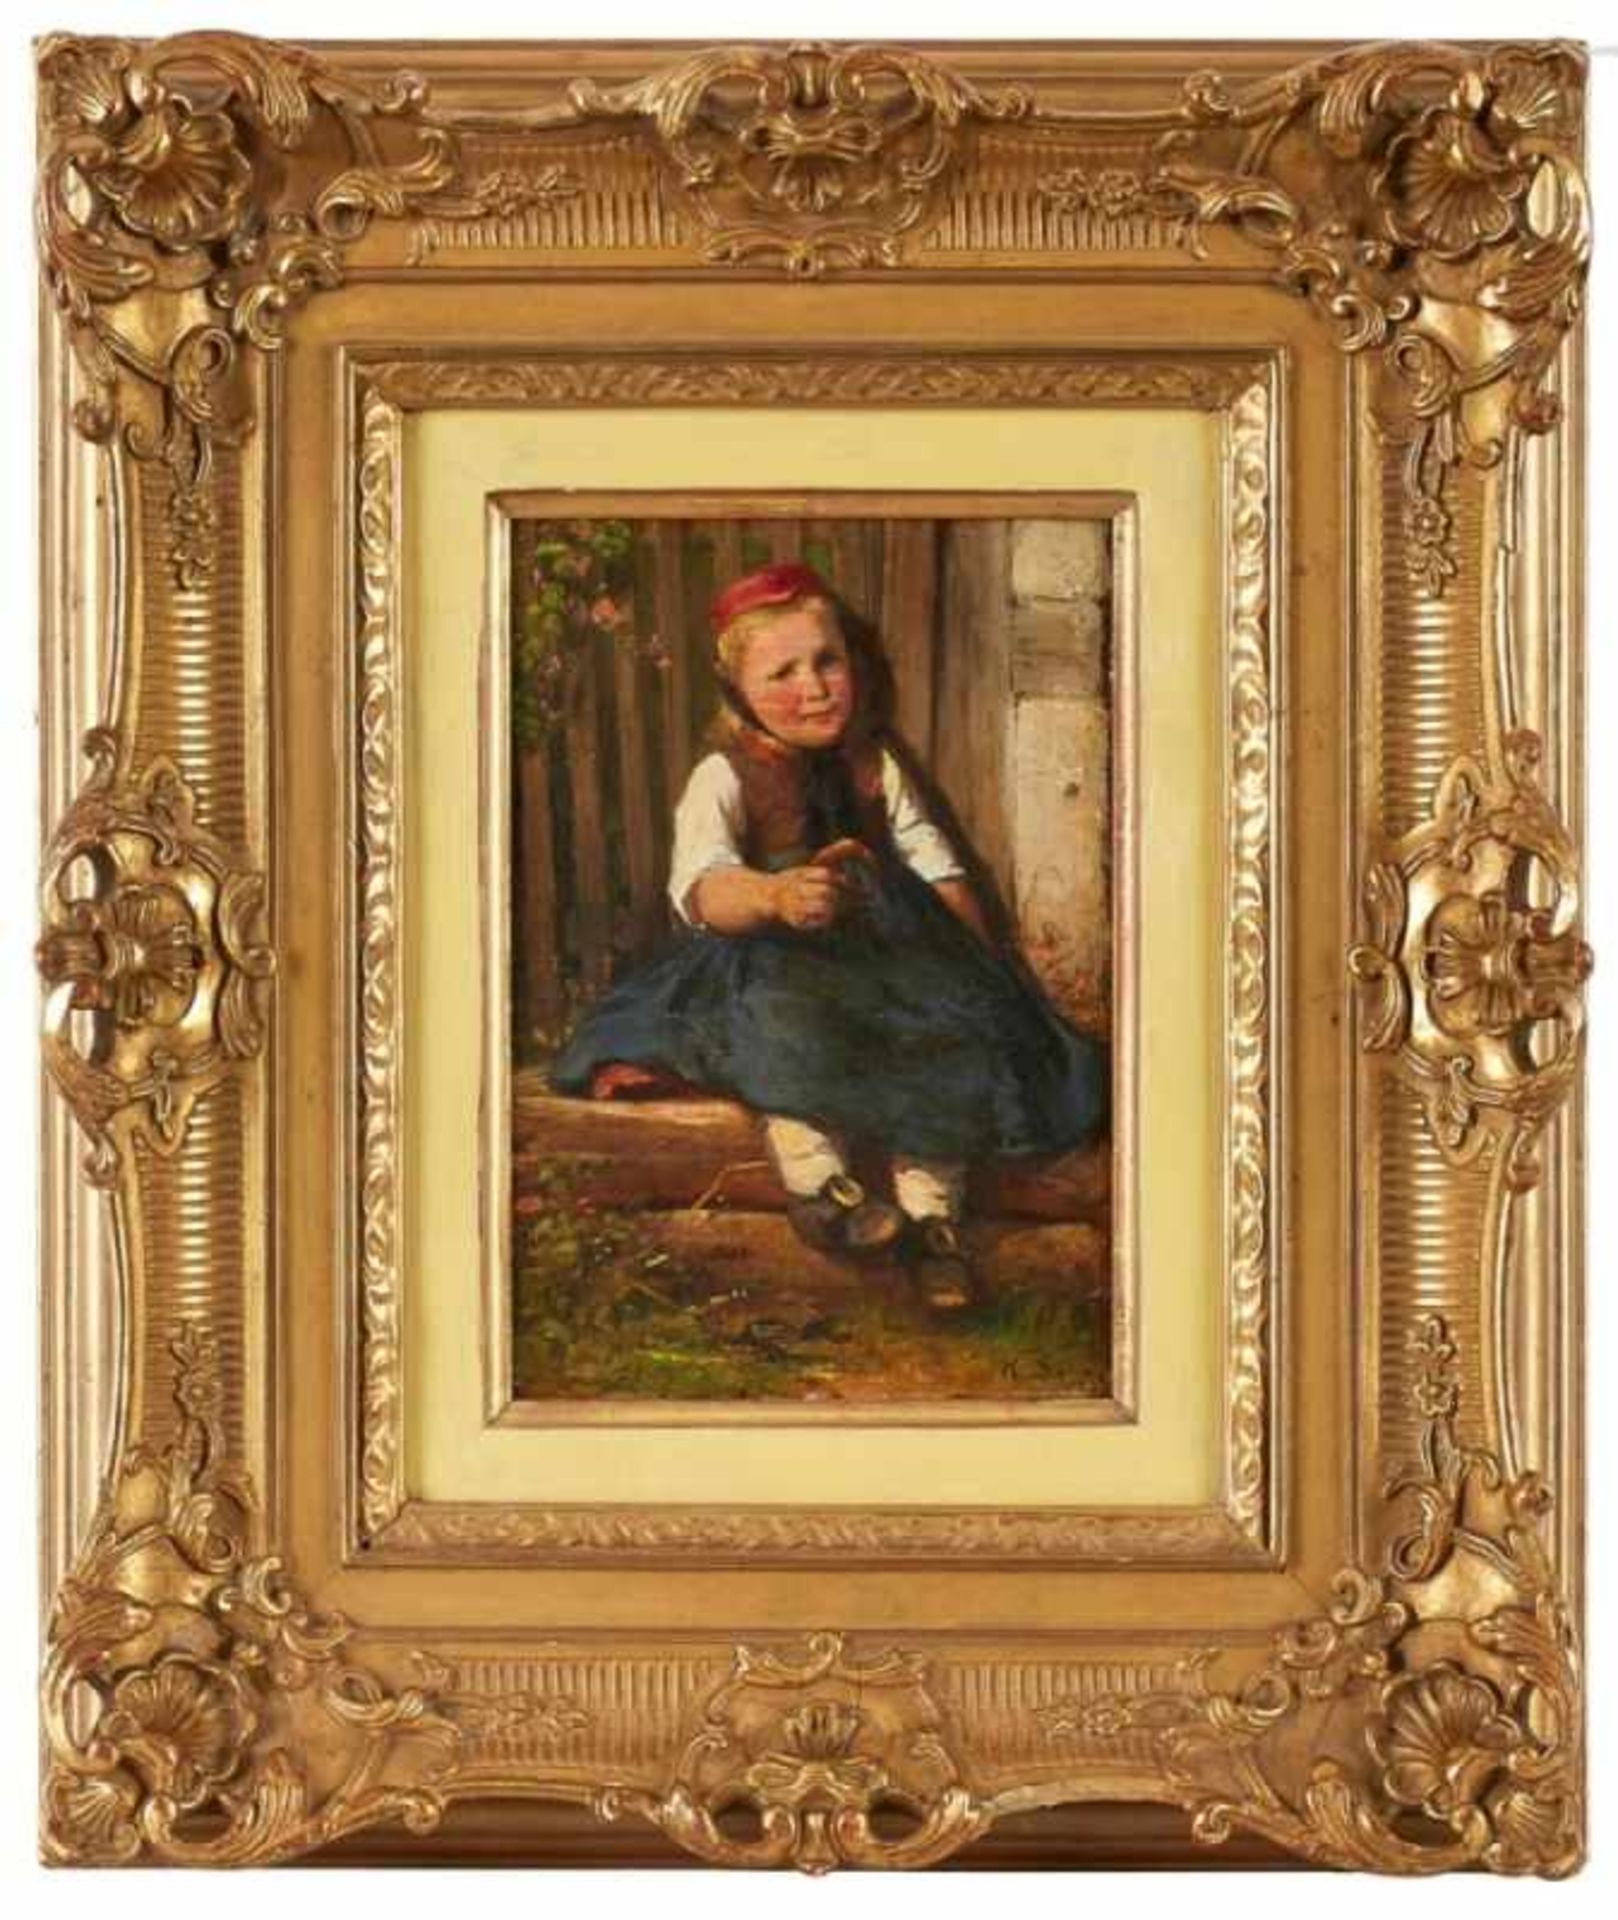 Gemälde Karl Rudolf Sohn1845 Düsseldorf - 1908 Düsseldorf Genremaler, Schüler seines Cousins, dem